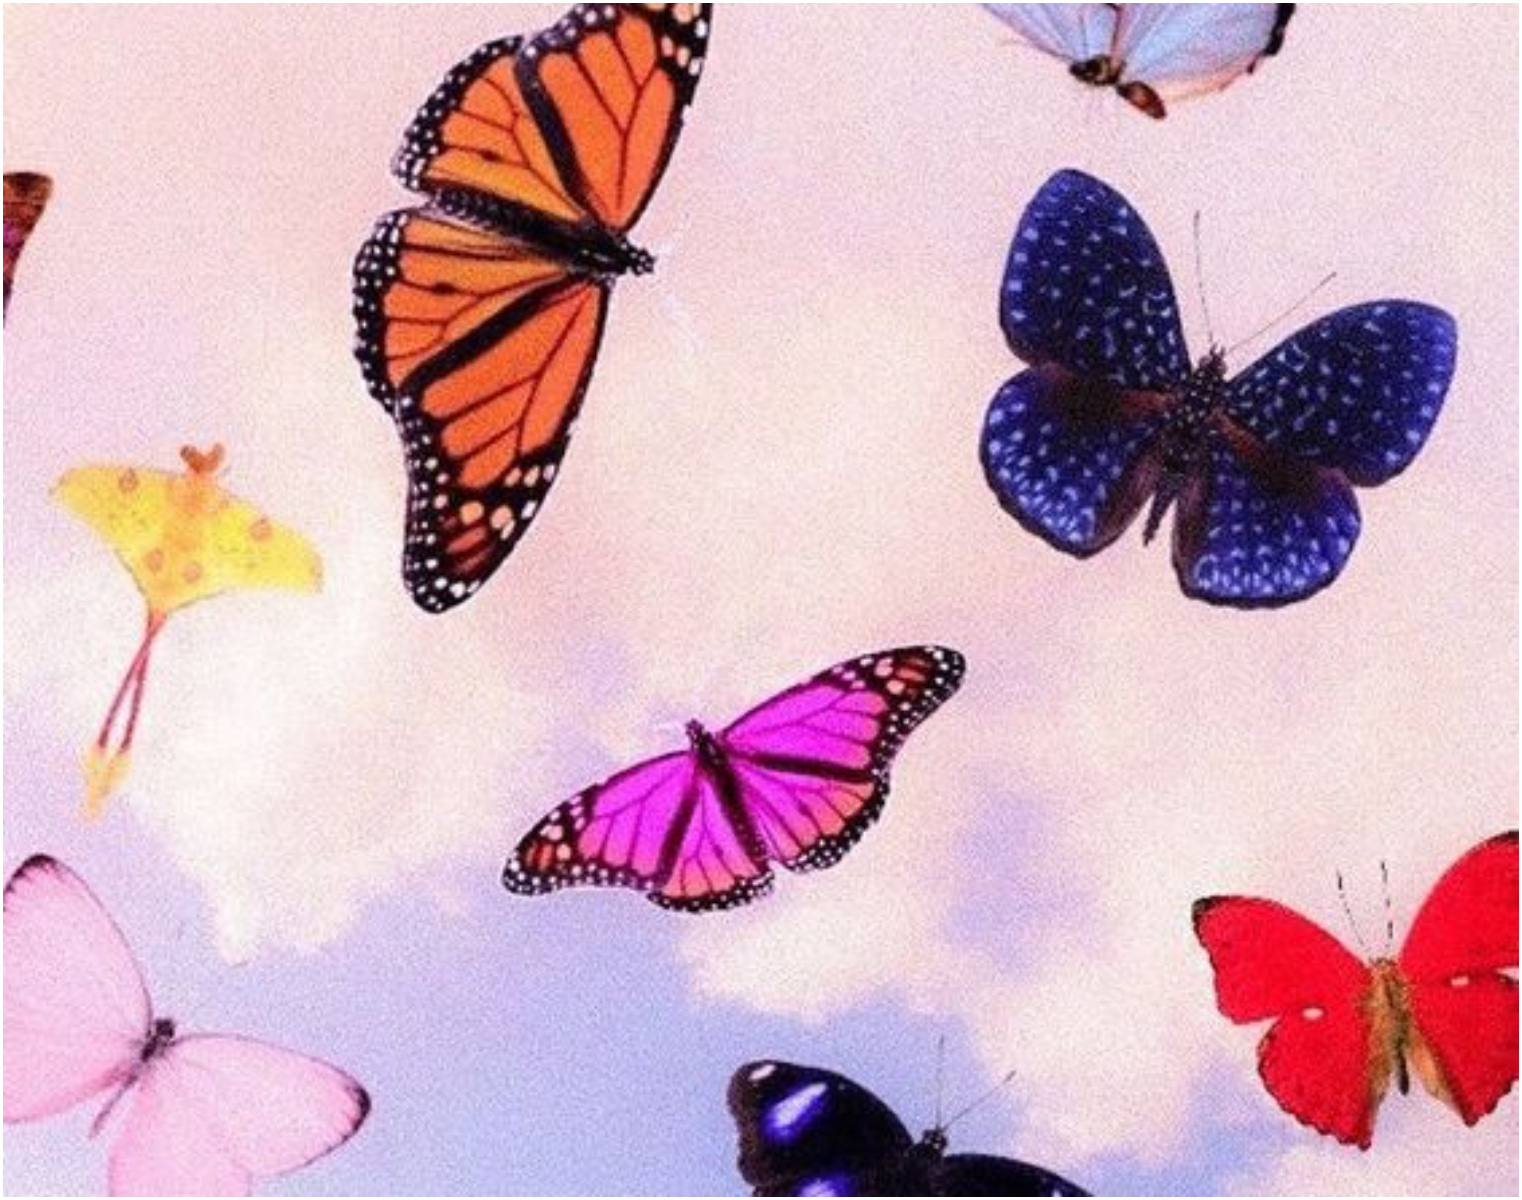 Ψυχολογικό τεστ: Σε ποιο λουλούδι θα καθίσει η πεταλούδα; Η απάντηση σου θα αποκαλύψει την πραγματική σου αντίληψη για τις σχέσεις